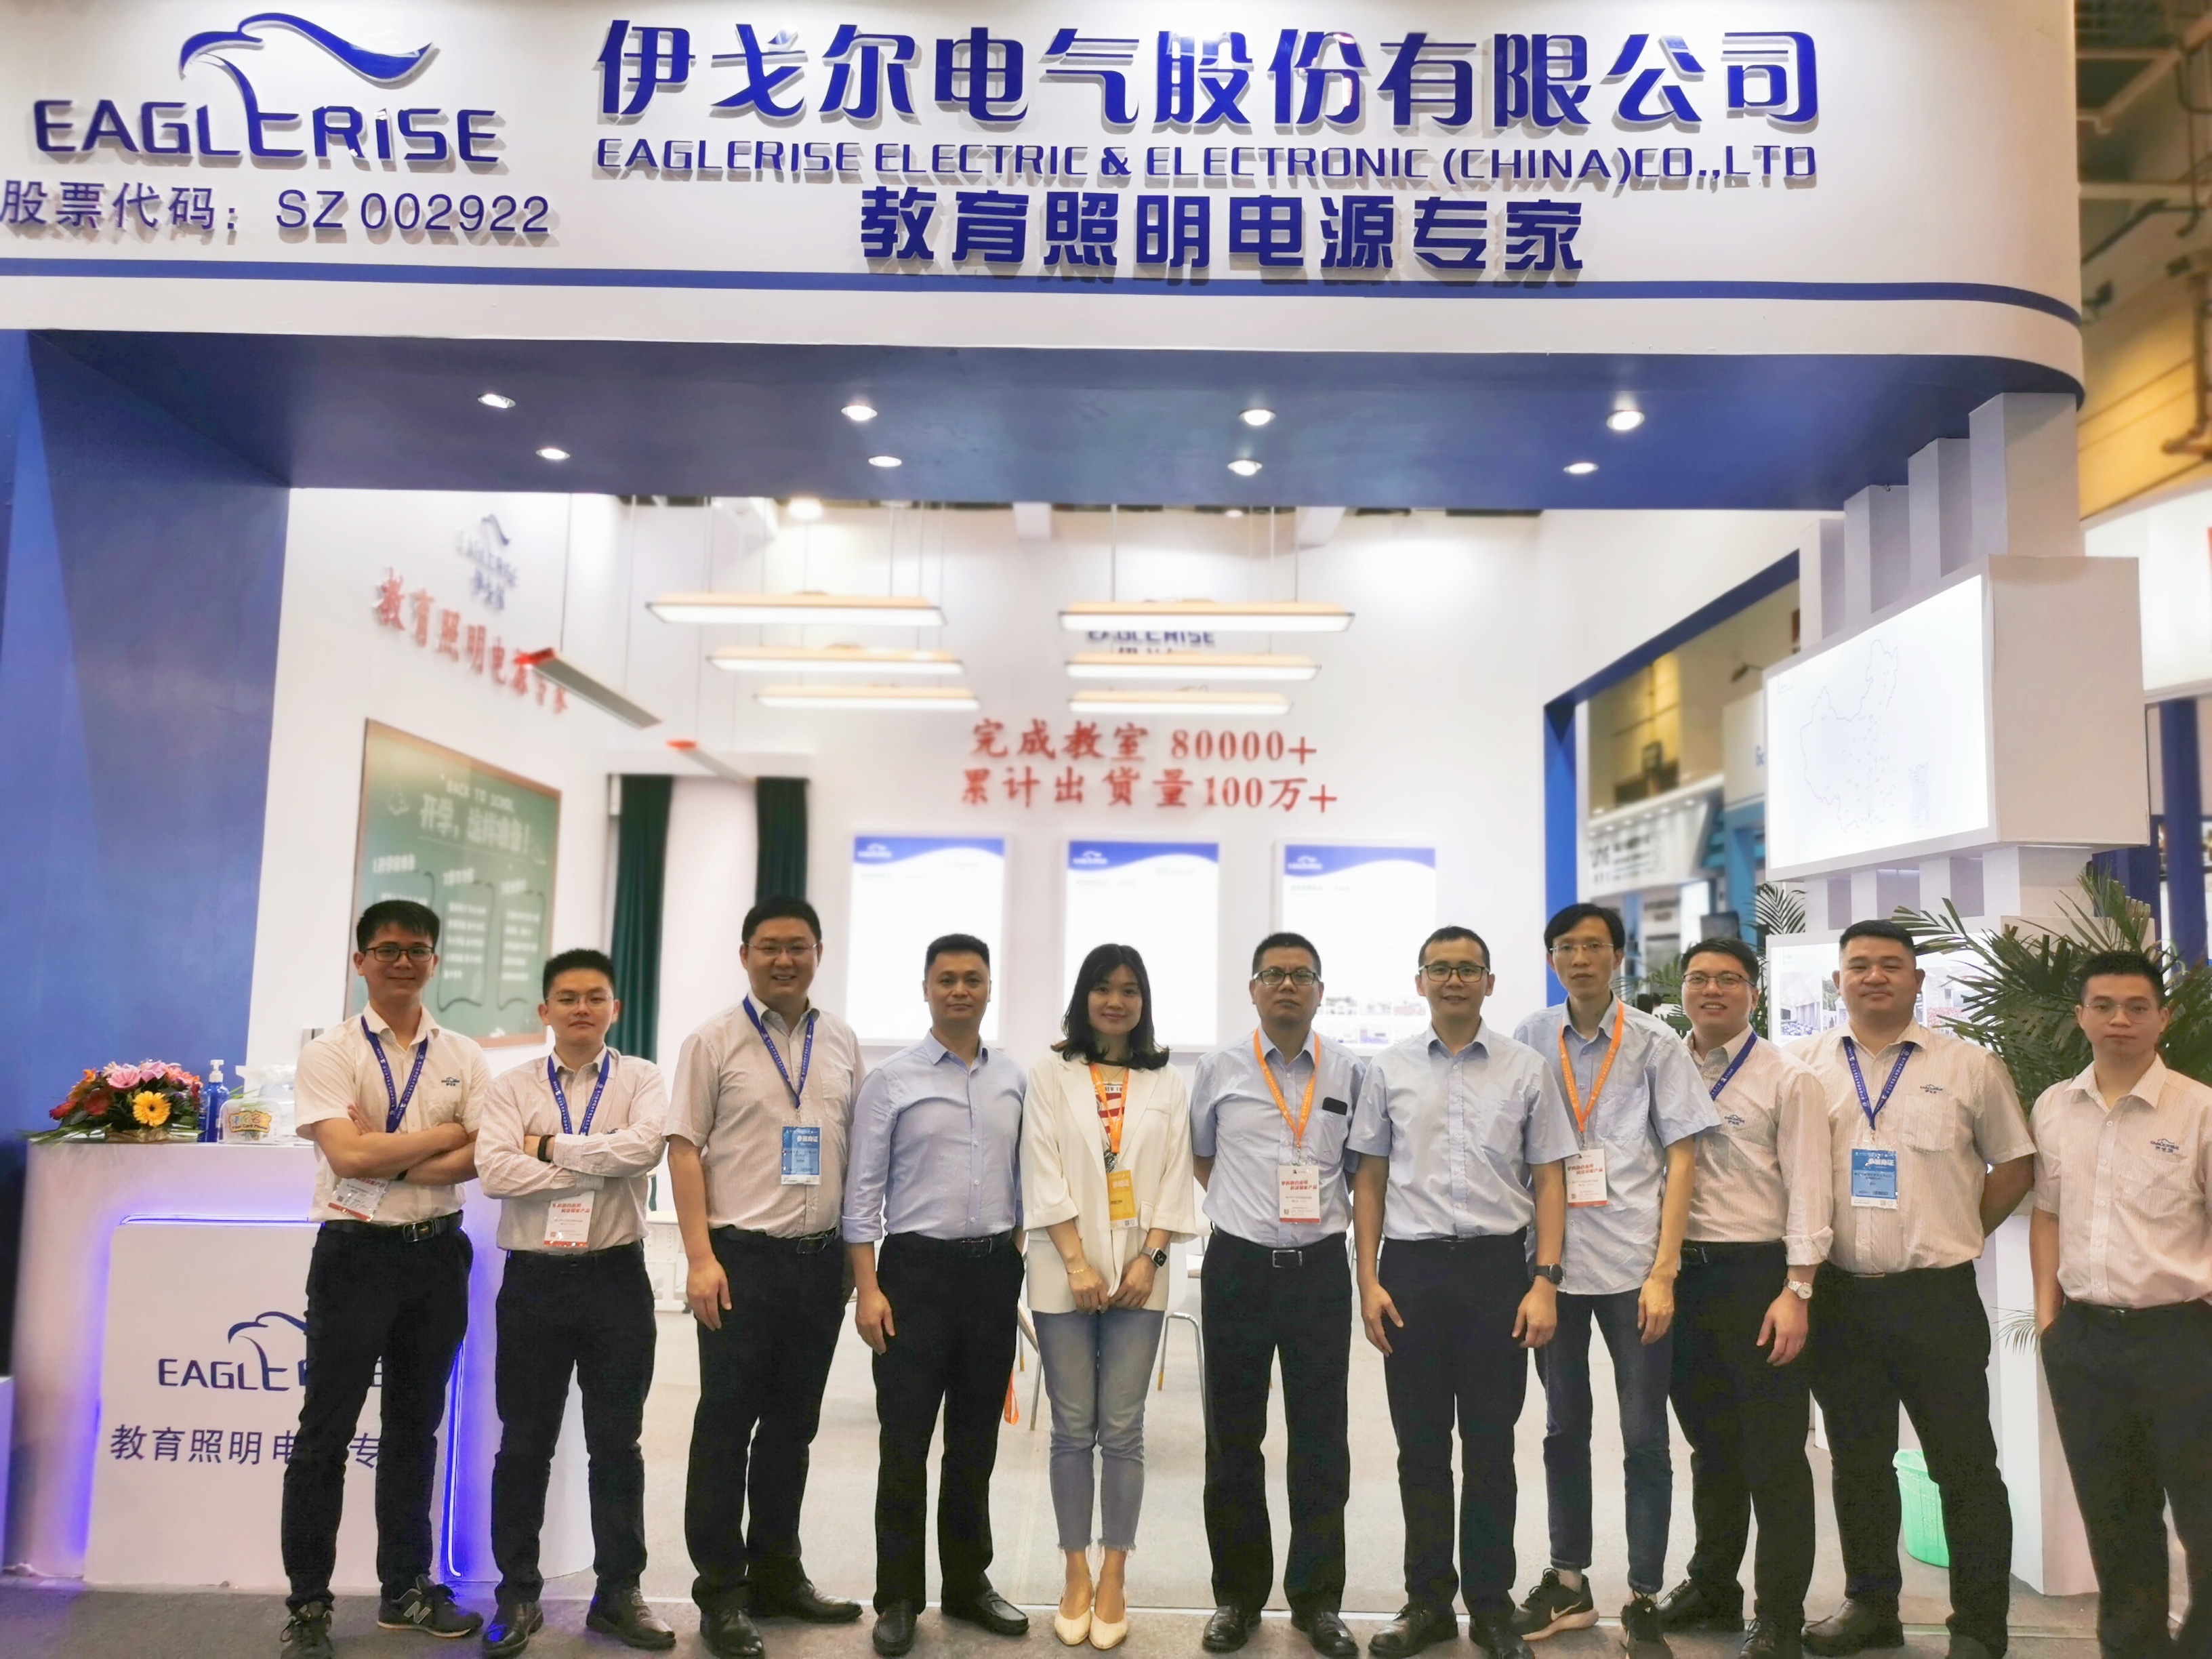 79 - я выставка образовательной техники китая в 2021 году (сямен)